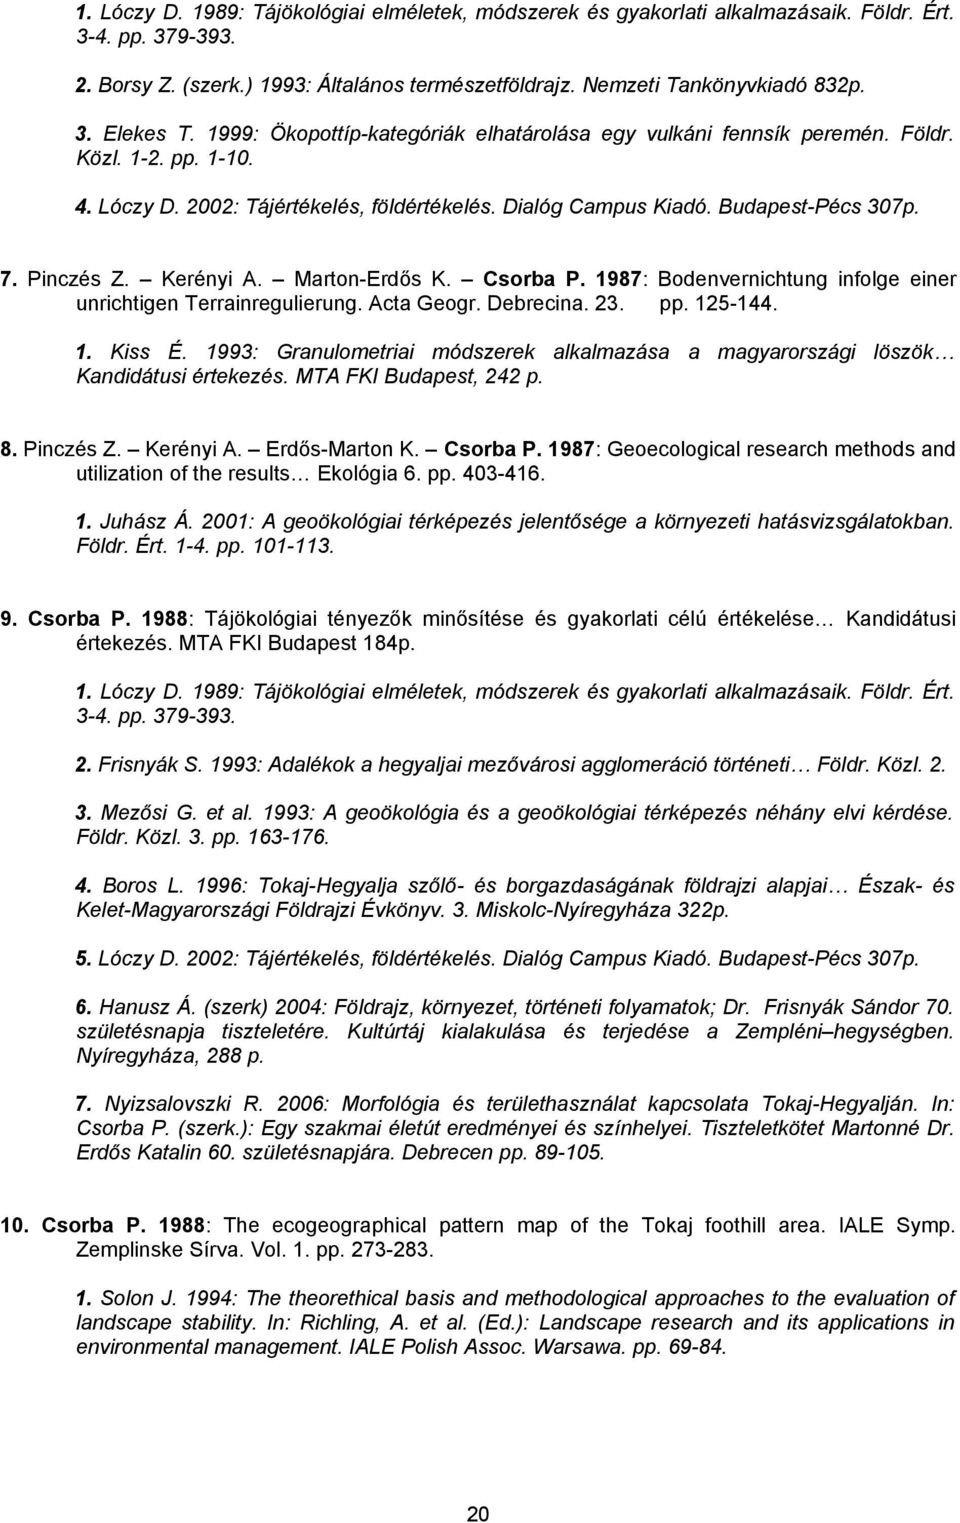 Kerényi A. Marton-Erdős K. Csorba P. 1987: Bodenvernichtung infolge einer unrichtigen Terrainregulierung. Acta Geogr. Debrecina. 23. pp. 125-144. 1. Kiss É.